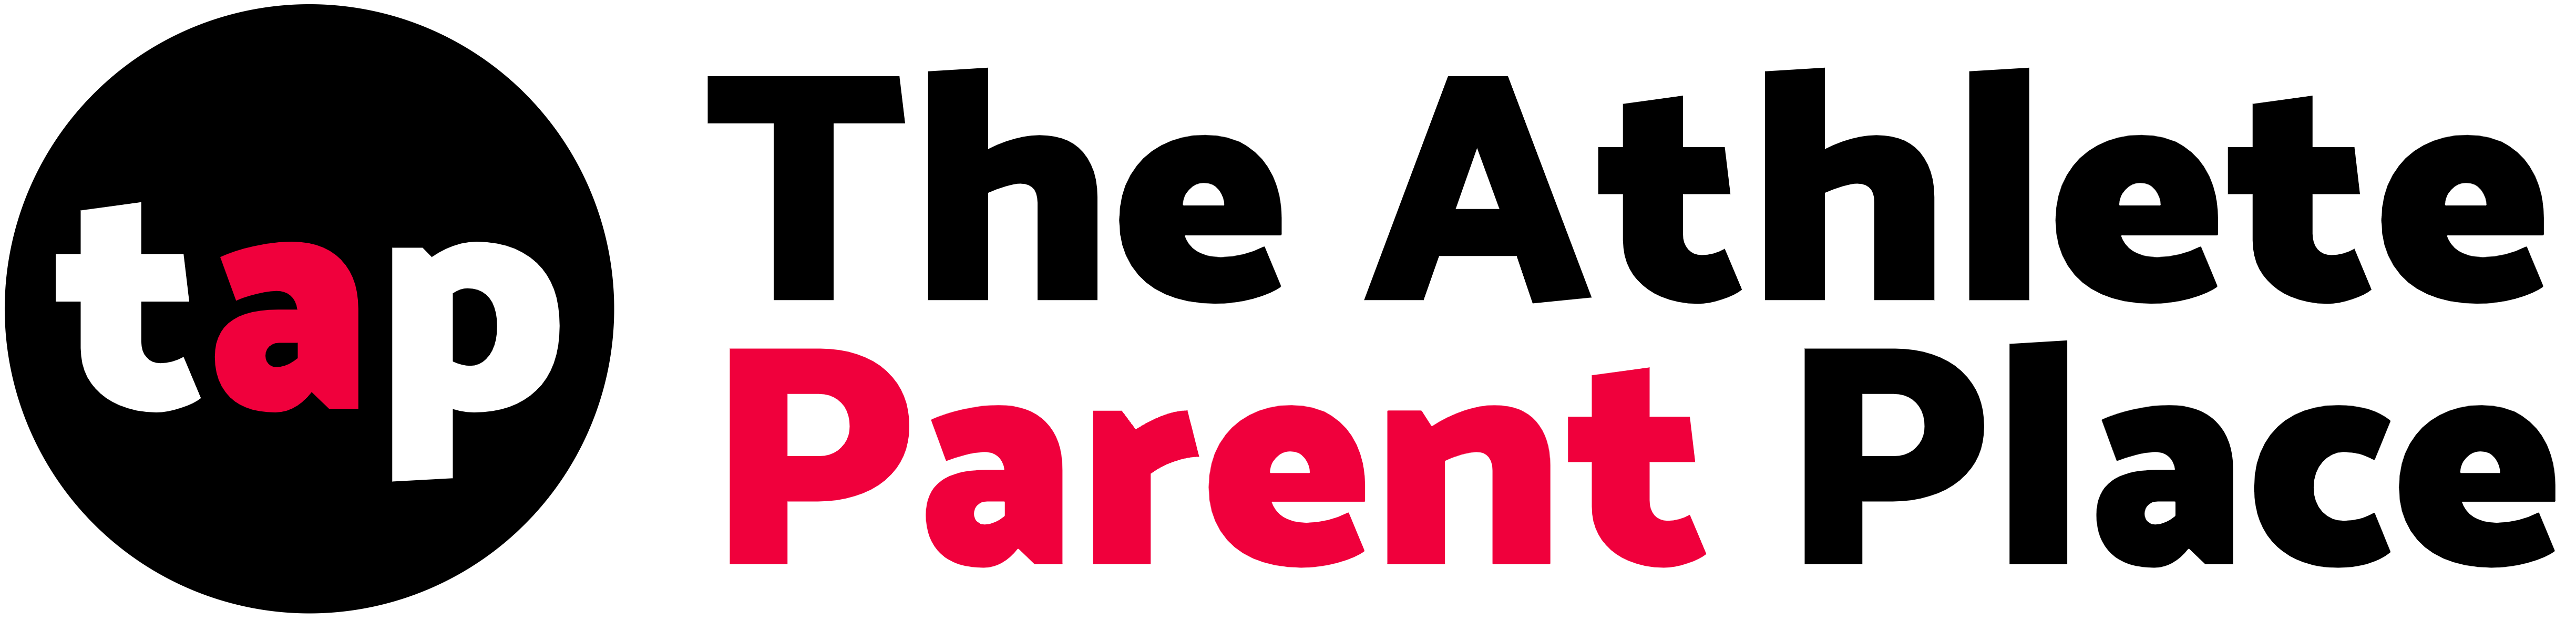 The Athlete Parent Place site logo